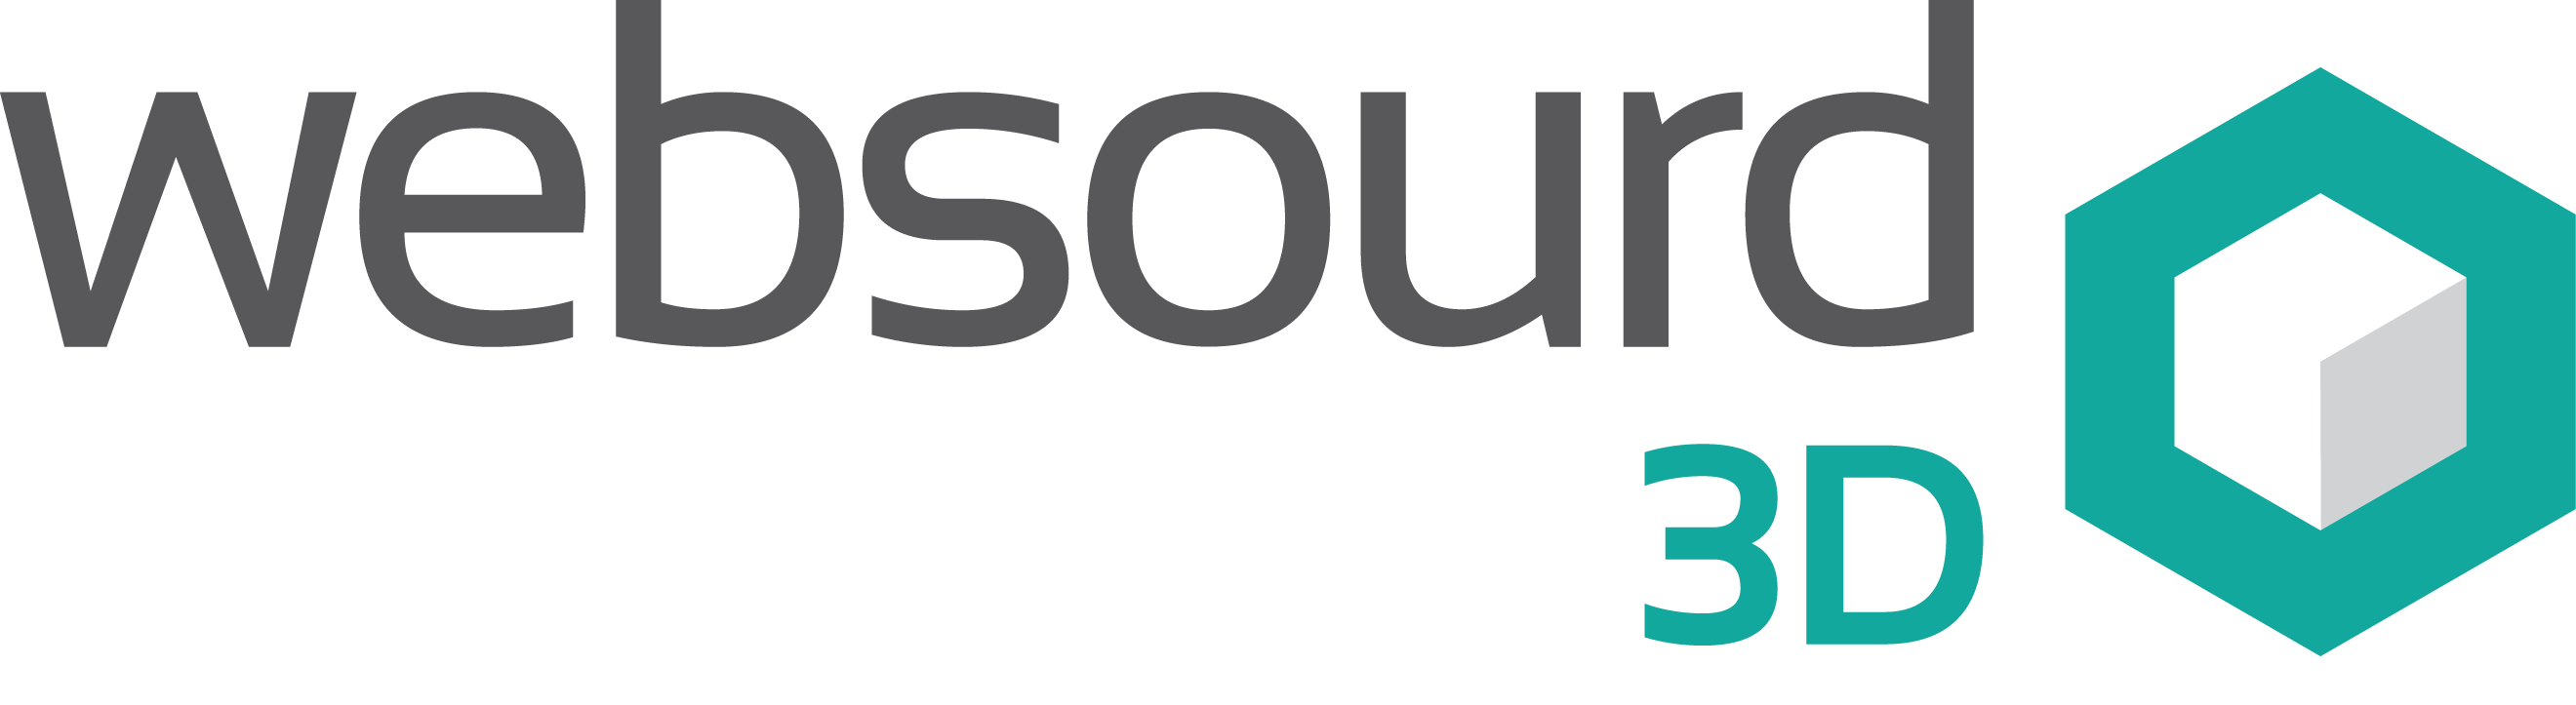 Websourd 3D logo